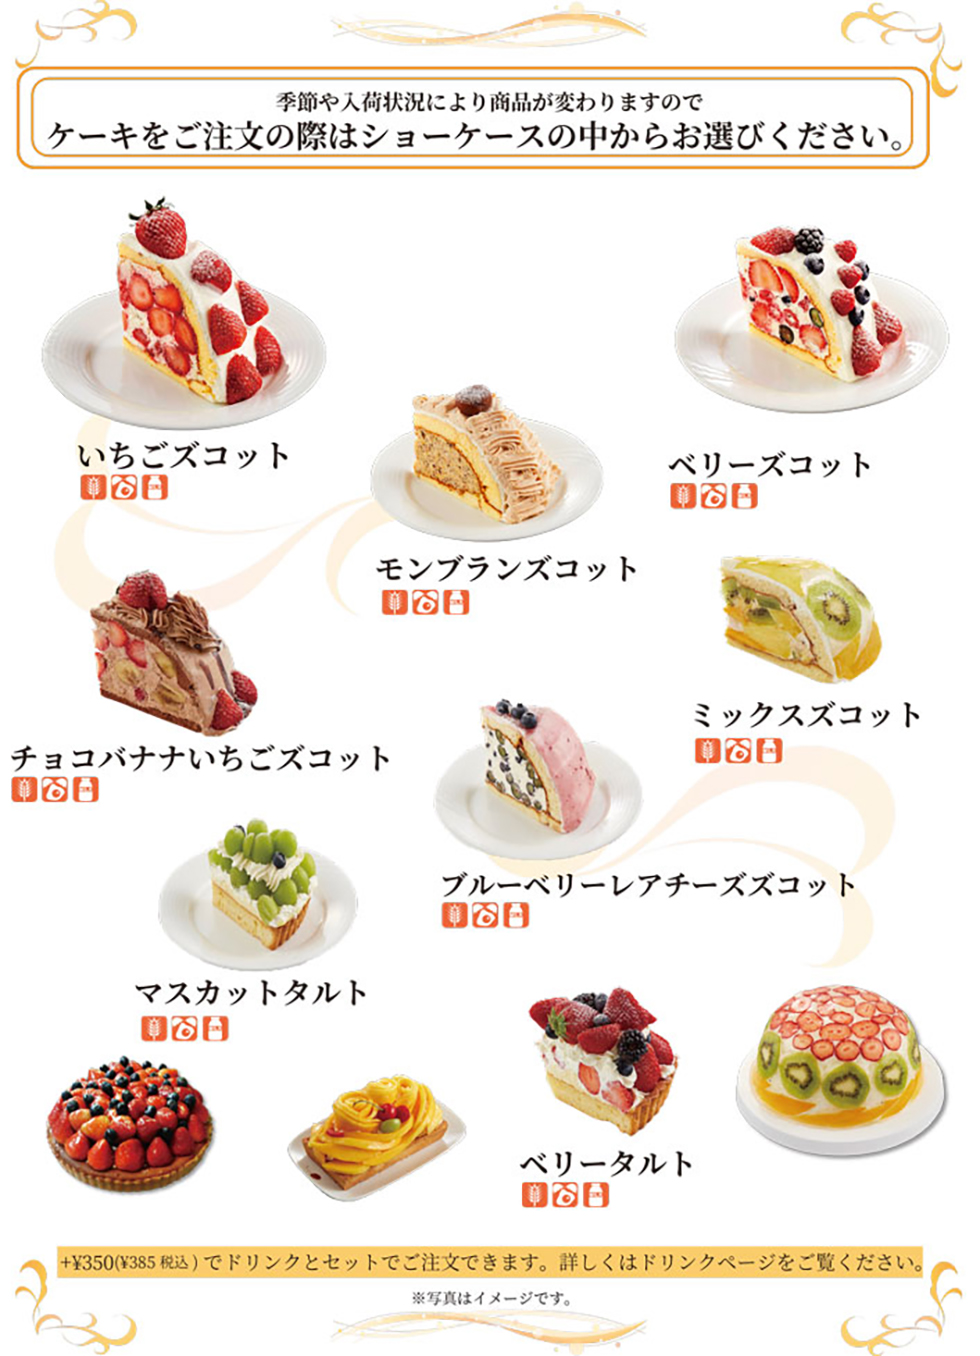 二子玉川店のデザートメニューケーキ